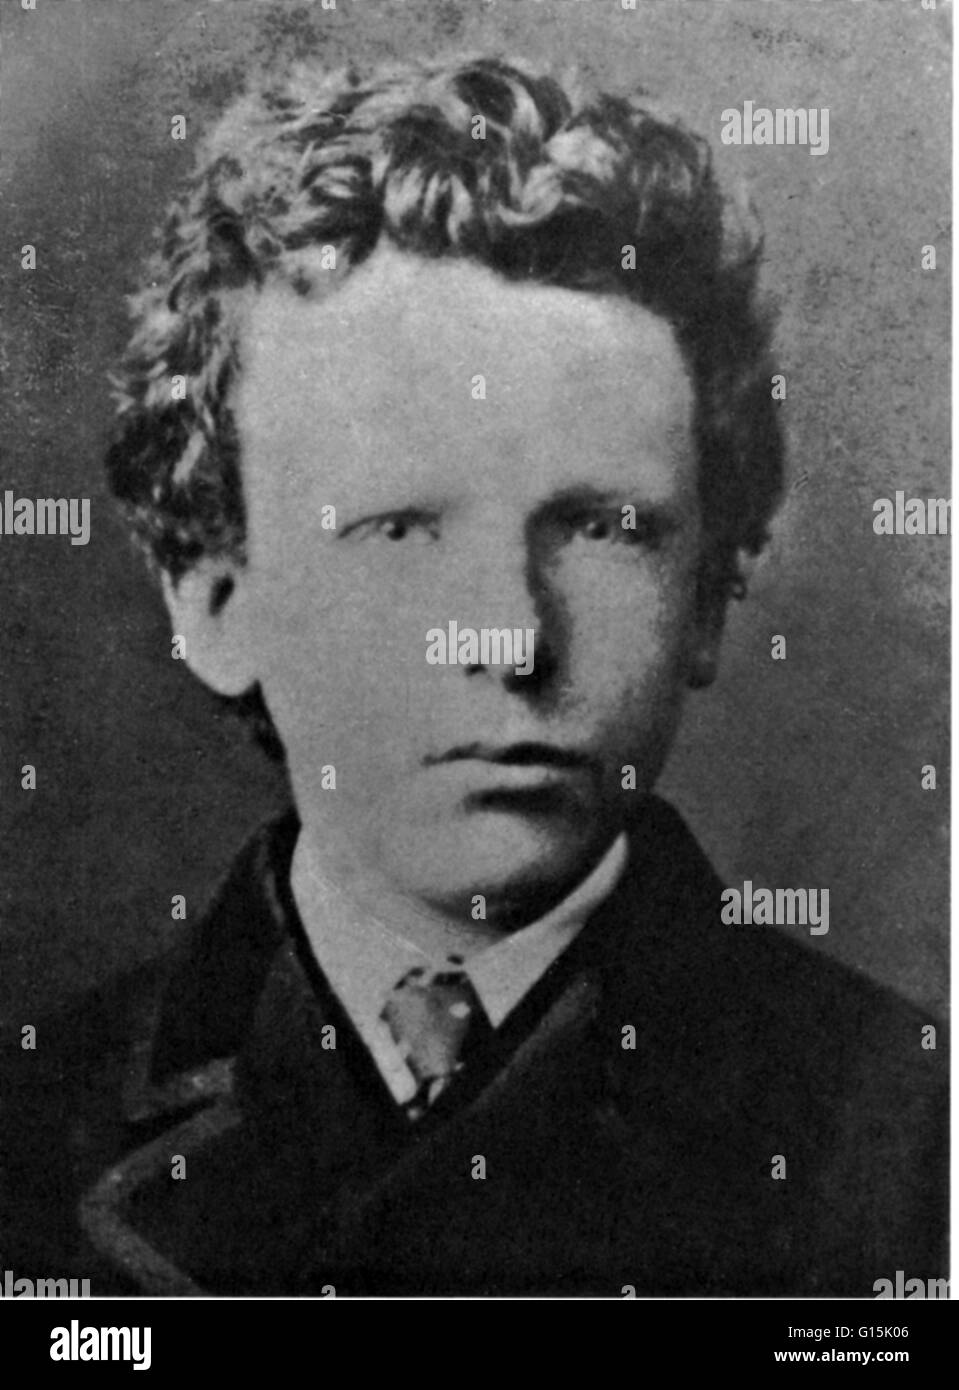 Foto von Van Gogh aufgenommen, als er 13 Jahre alt war. Vincent Willem Van Gogh (30. März 1853 - 29. Juli 1890) war ein niederländischer post-impressionistischen Maler deren Arbeit, bekannt für seine raue Schönheit, emotionale Ehrlichkeit und kräftigen Farben eine weitreichende Einflusse hatte Stockfoto